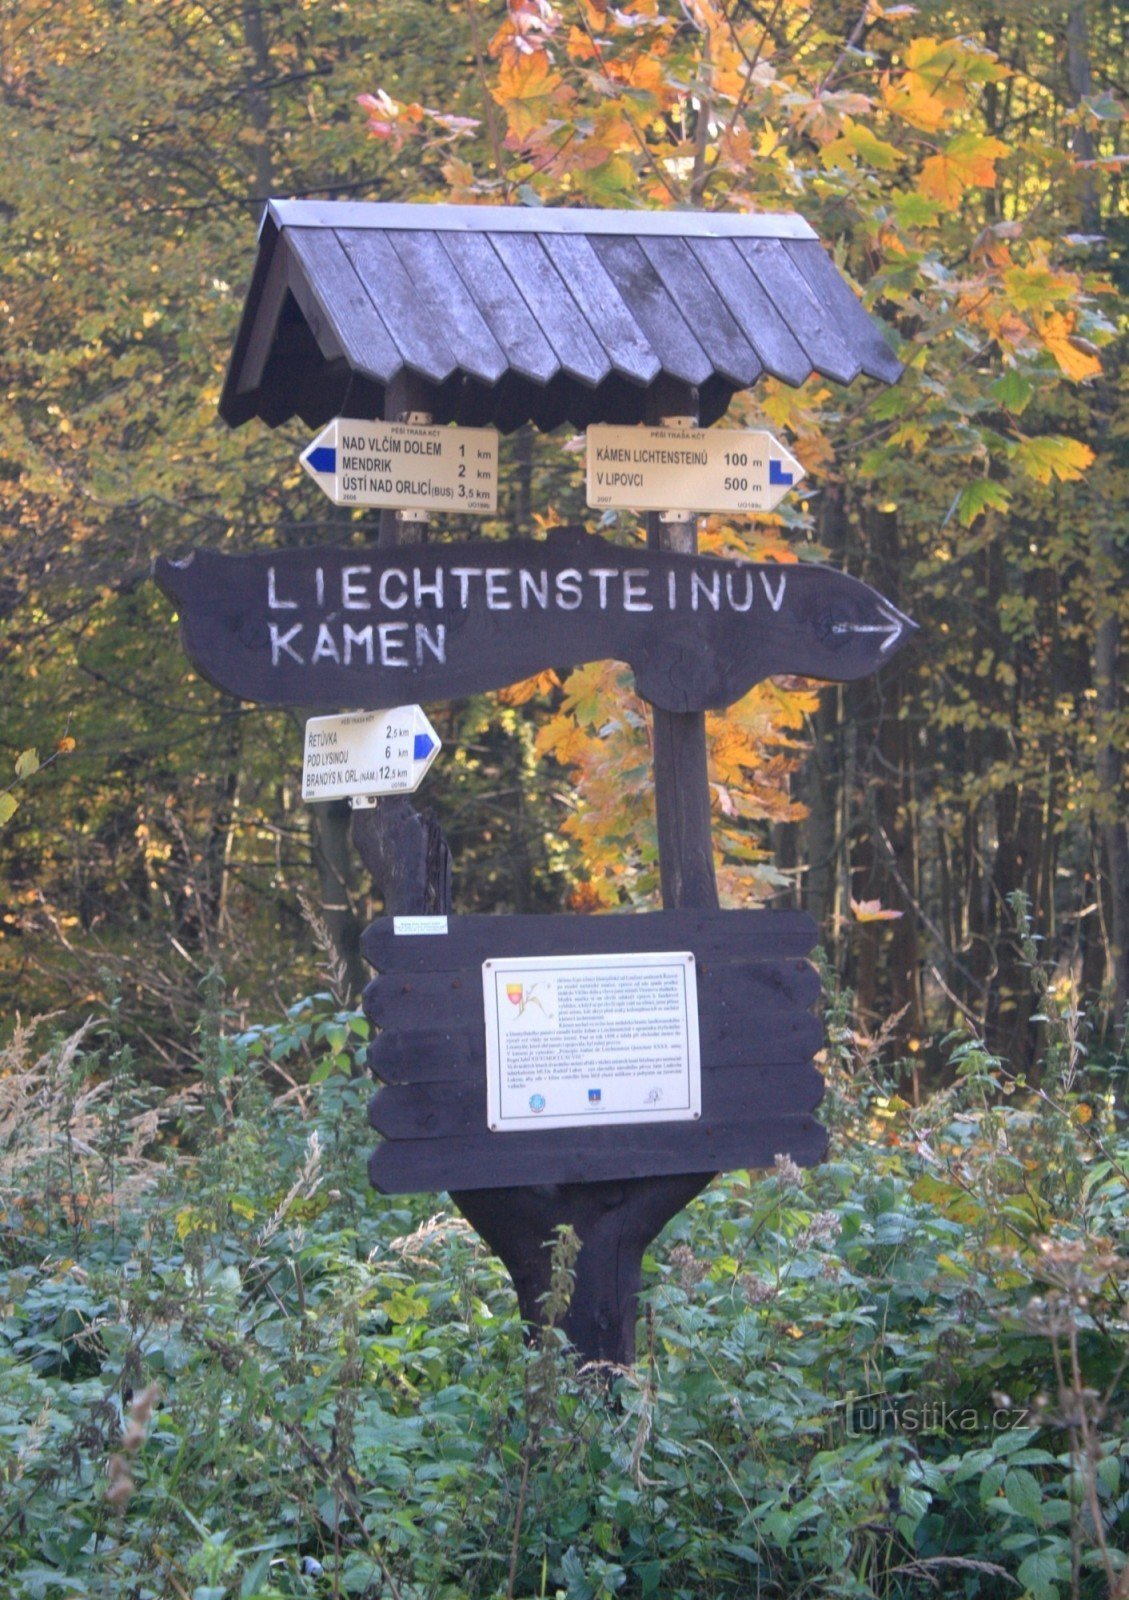 Tourist crossroads At the stone of Liechtenstein